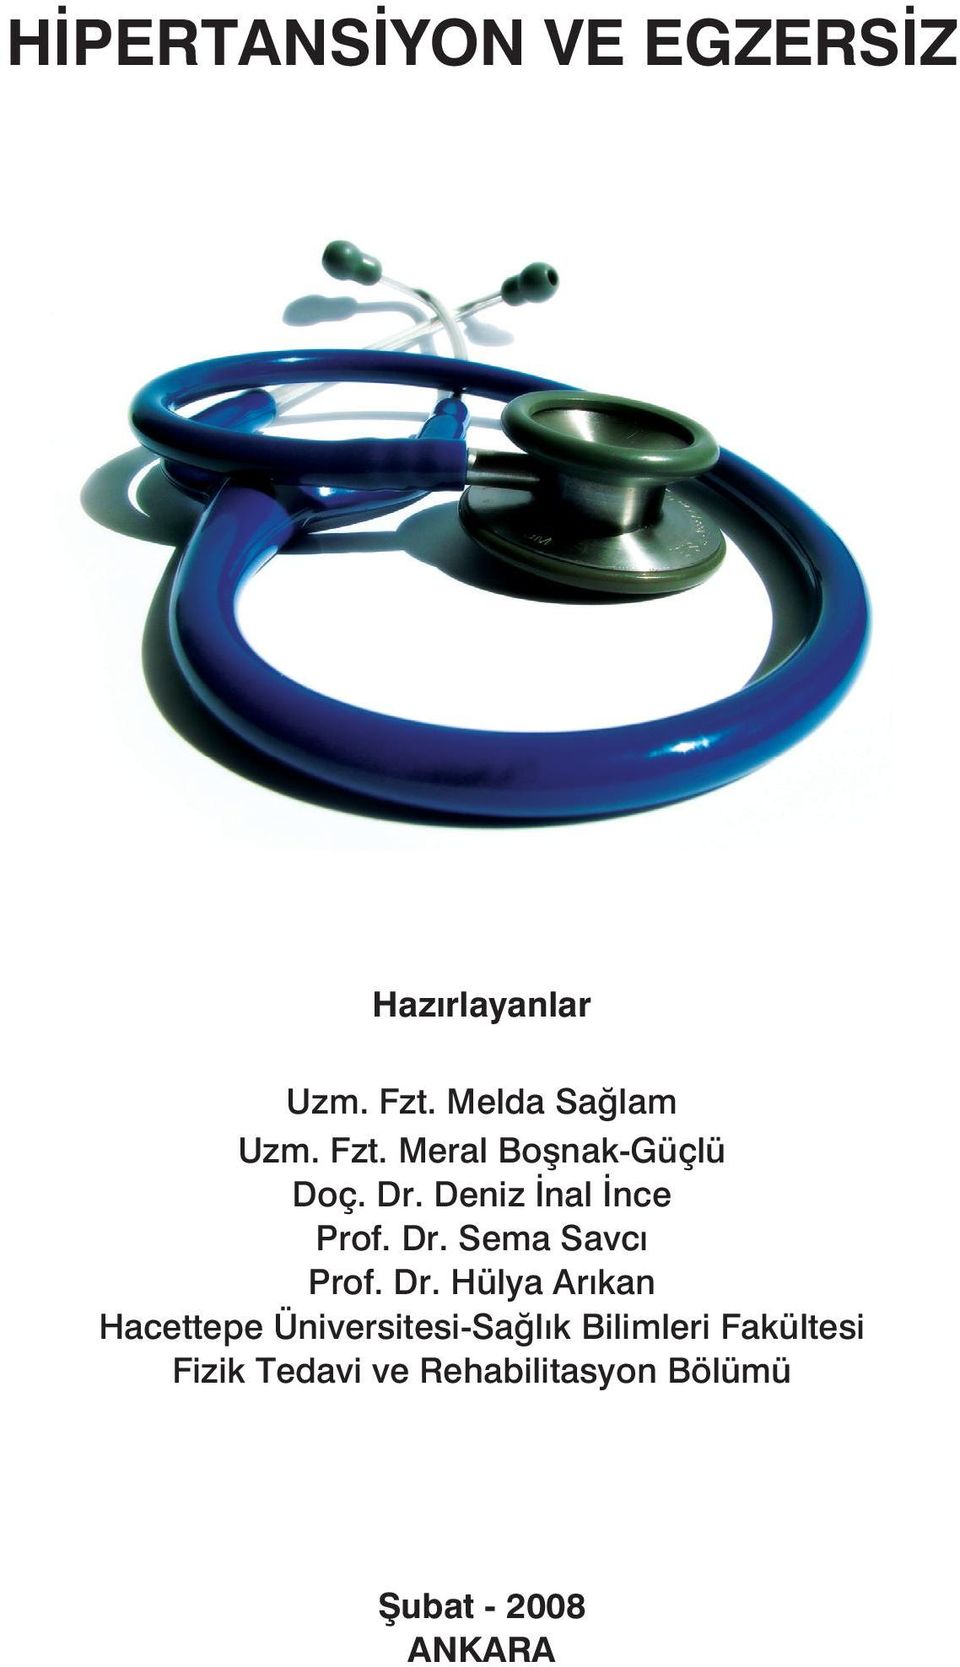 Dr. Hülya Arıkan Hacettepe Üniversitesi-Sağlık Bilimleri Fakültesi